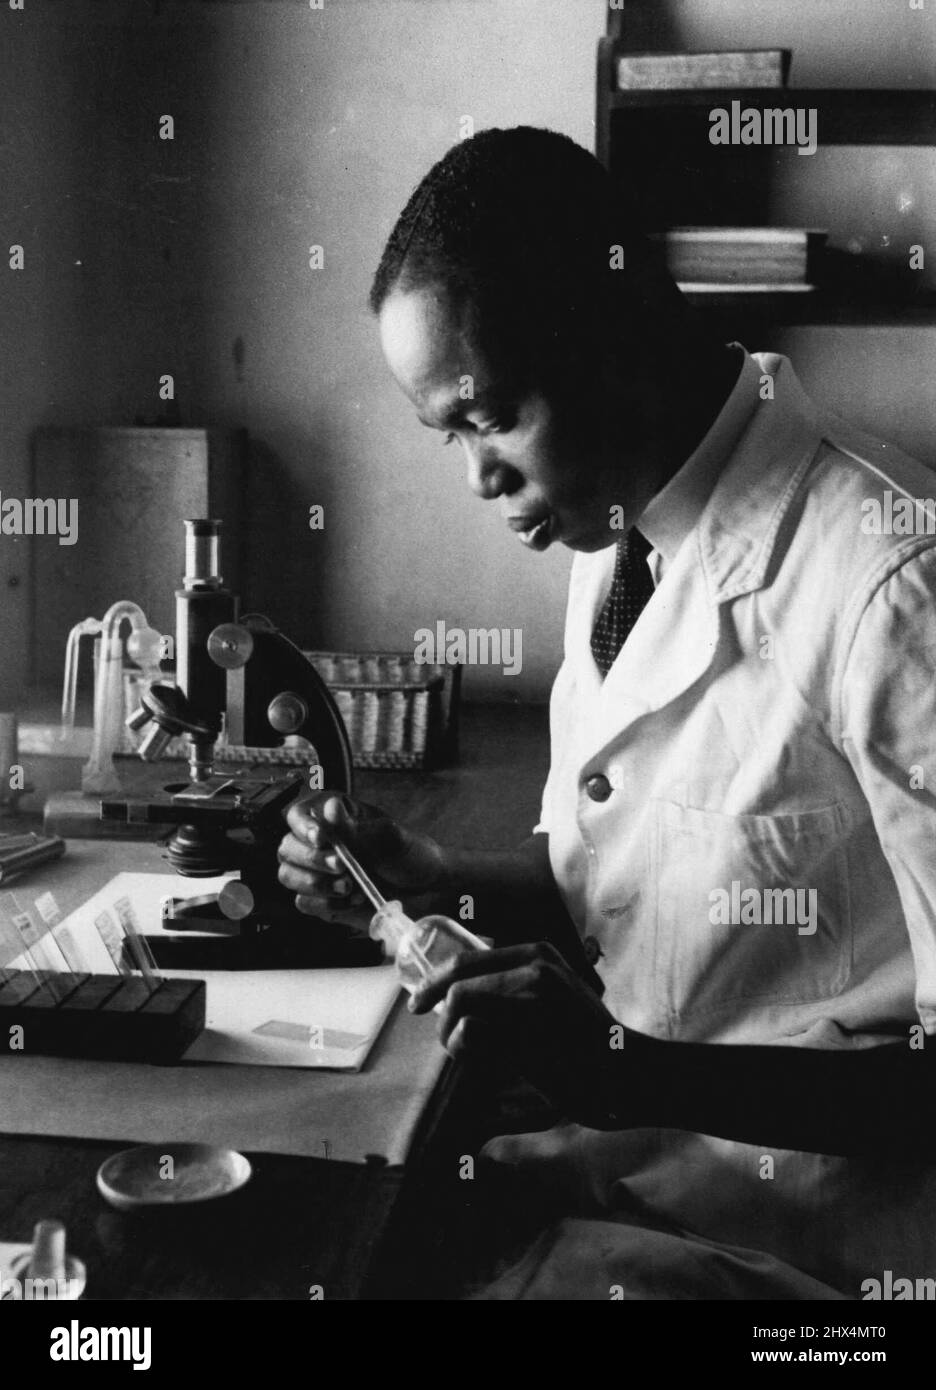 Kampf gegen Tropenkrankheiten -- Ein Mitarbeiter des Medizinischen Forschungsinstituts, Gold Coast, Herr G. A. Agbenu, untersucht einen Test, der das Vorhandensein von Wurmbefall bestimmen wird. Herr Agbenu war neun Jahre lang in den Nordgebieten bei Untersuchungen zur Trypanosomiasis tätig. Das Medizinische Forschungsinstitut an der Goldküste führte den oft gefährlichen Laborwok im Kampf gegen Tropenkrankheiten durch. Das Institut wurde 1920 von Dr. McAfee, dem ersten Direktor der medizinischen Forschung, gegründet. In der Finanzkrise 1931 war ein großer Teil des europäischen Personals so recherchiert Stockfoto